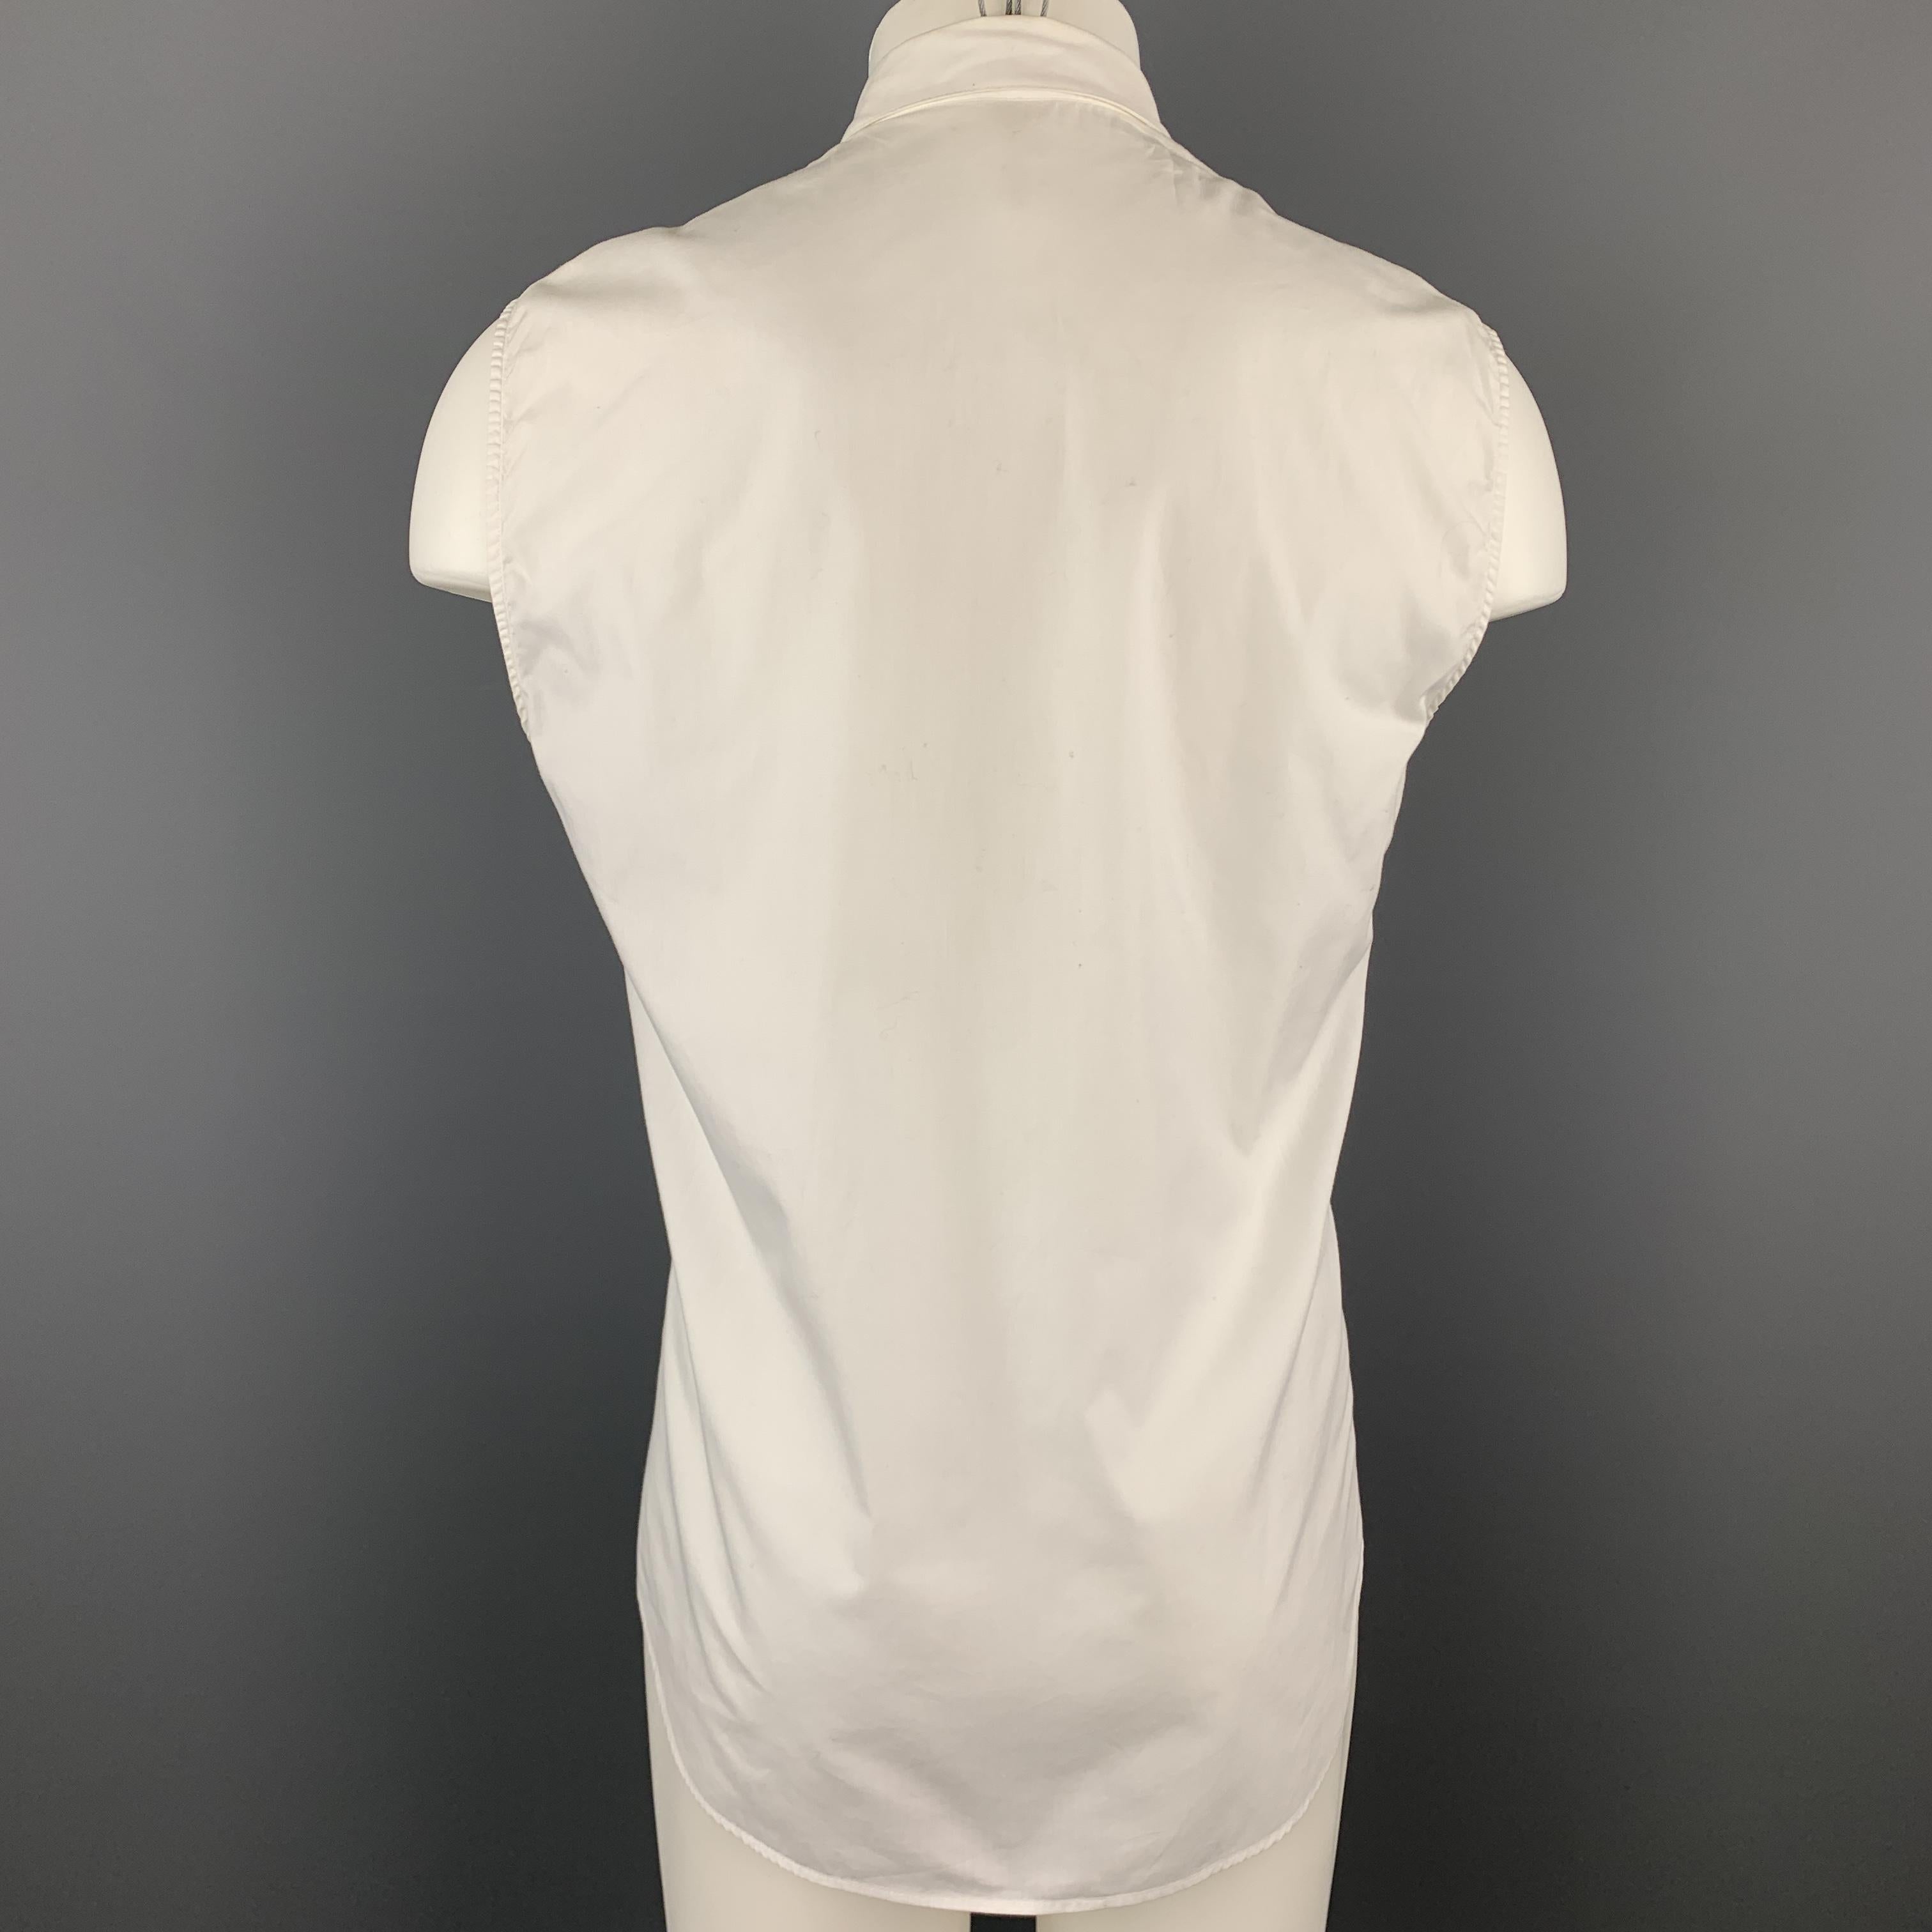 MUGLER Size M White Cotton Cutout Snaps Sleeveless Shirt 1